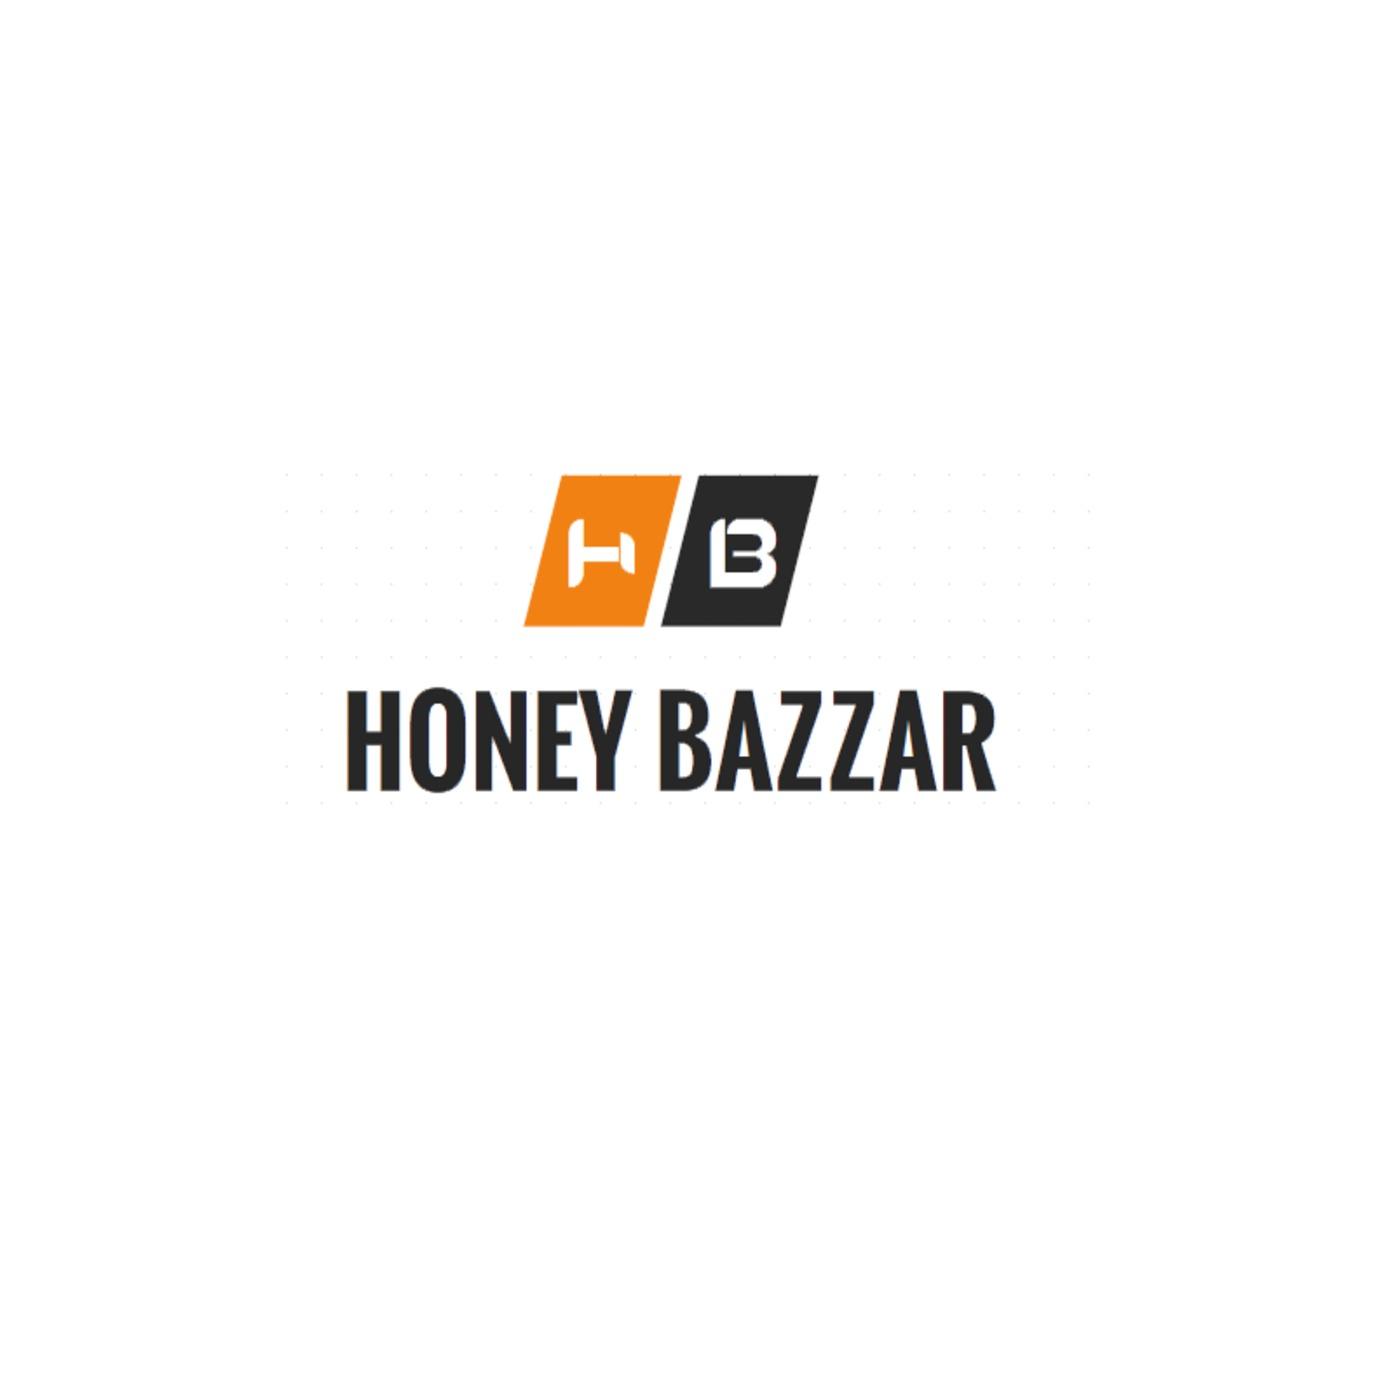 HoneyBazzar